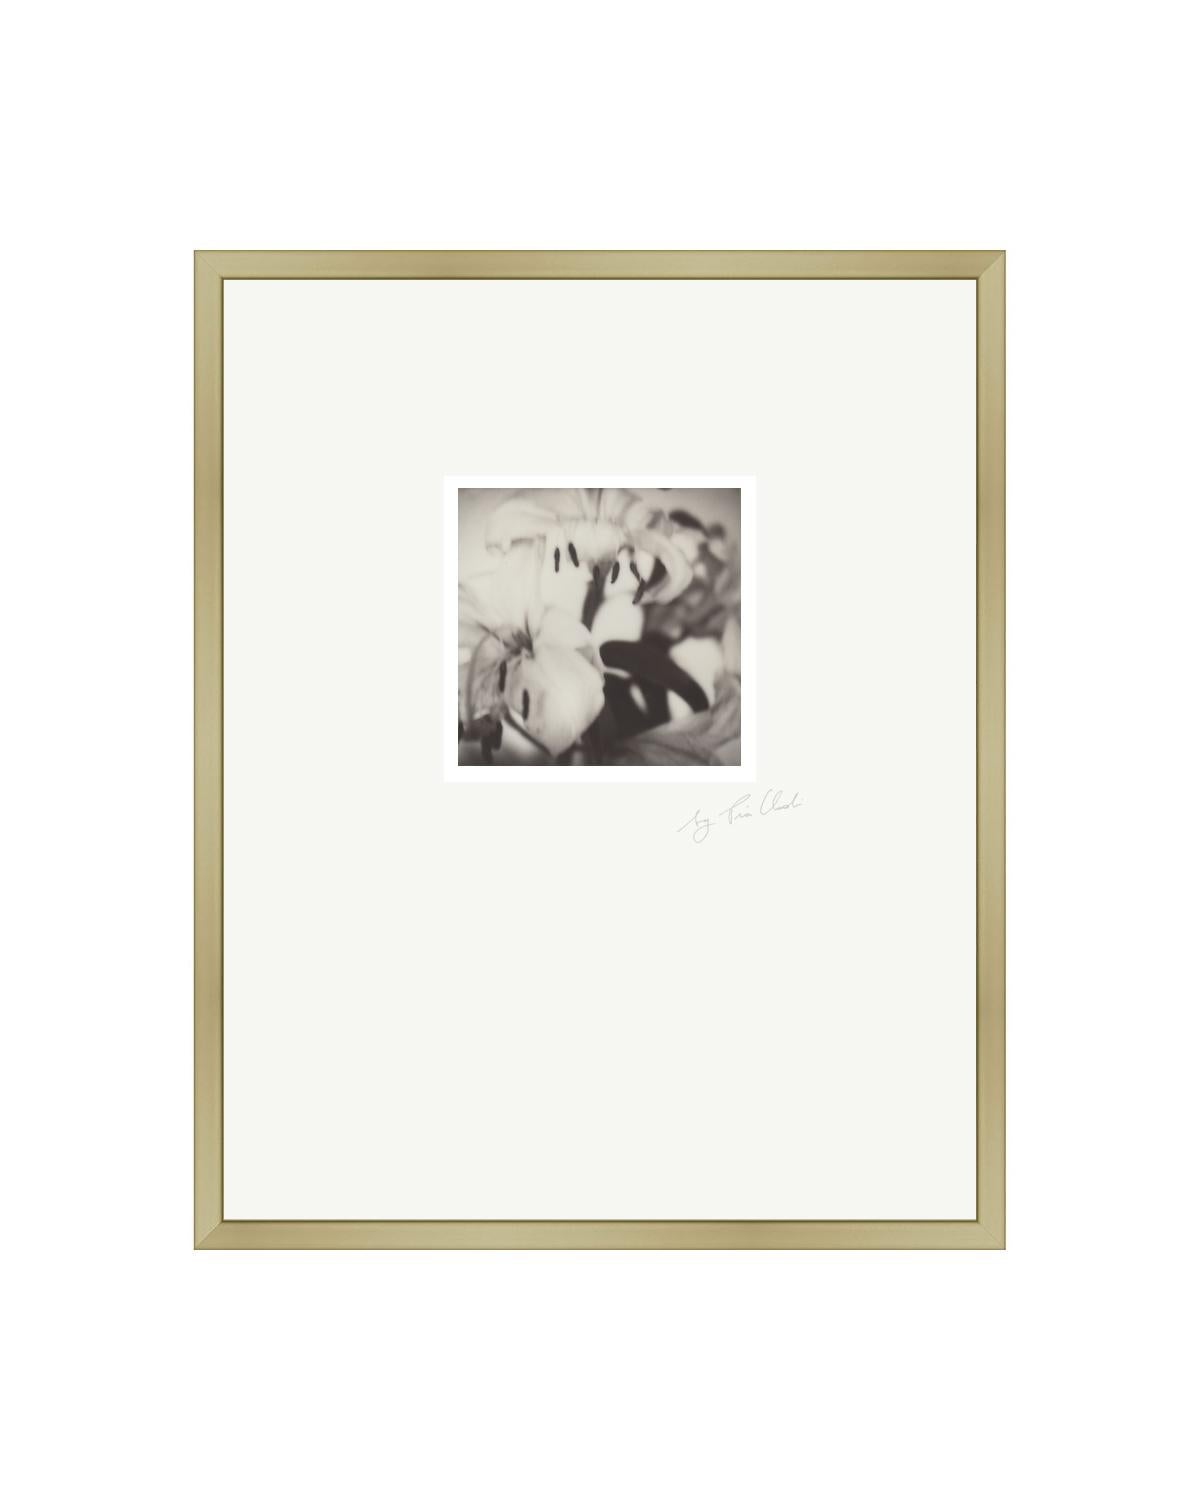 Past Bloom II - Photographie Polaroid contemporaine noire et blanche originale encadrée